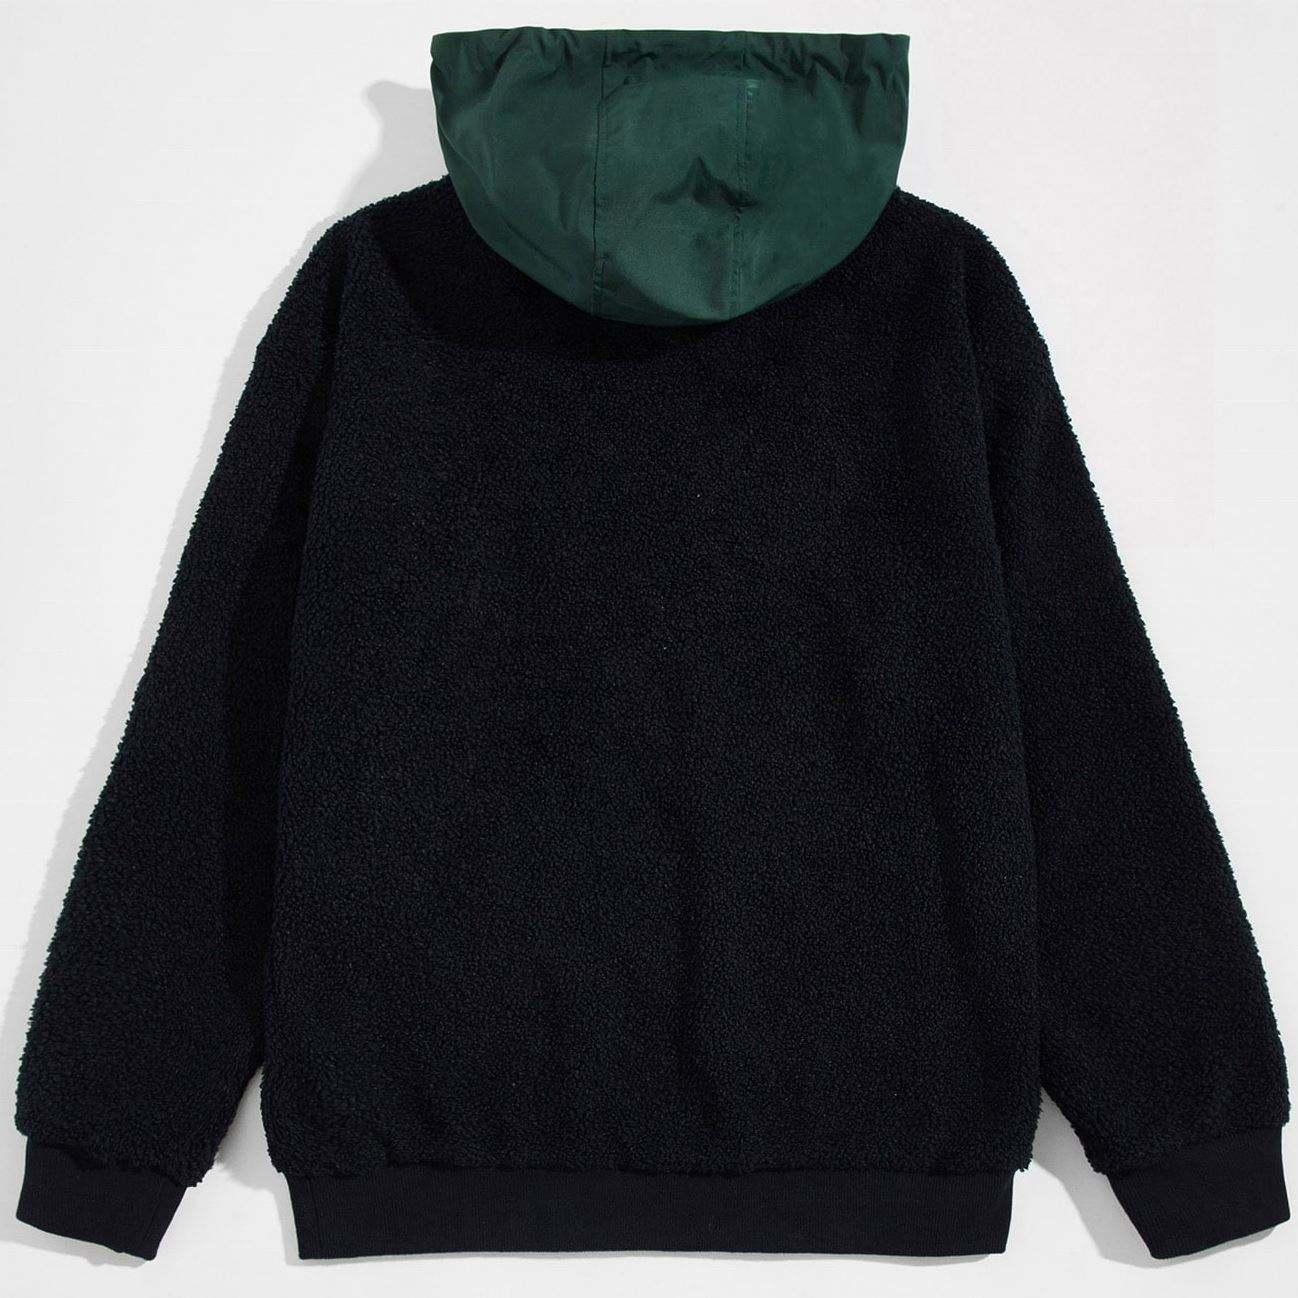 OEM Manufacturer Custom Men's Clothing Fleece Cotton Half Zipper Patchwork Hoodies Pullover Sweatshirt With Big Cargo Pockets